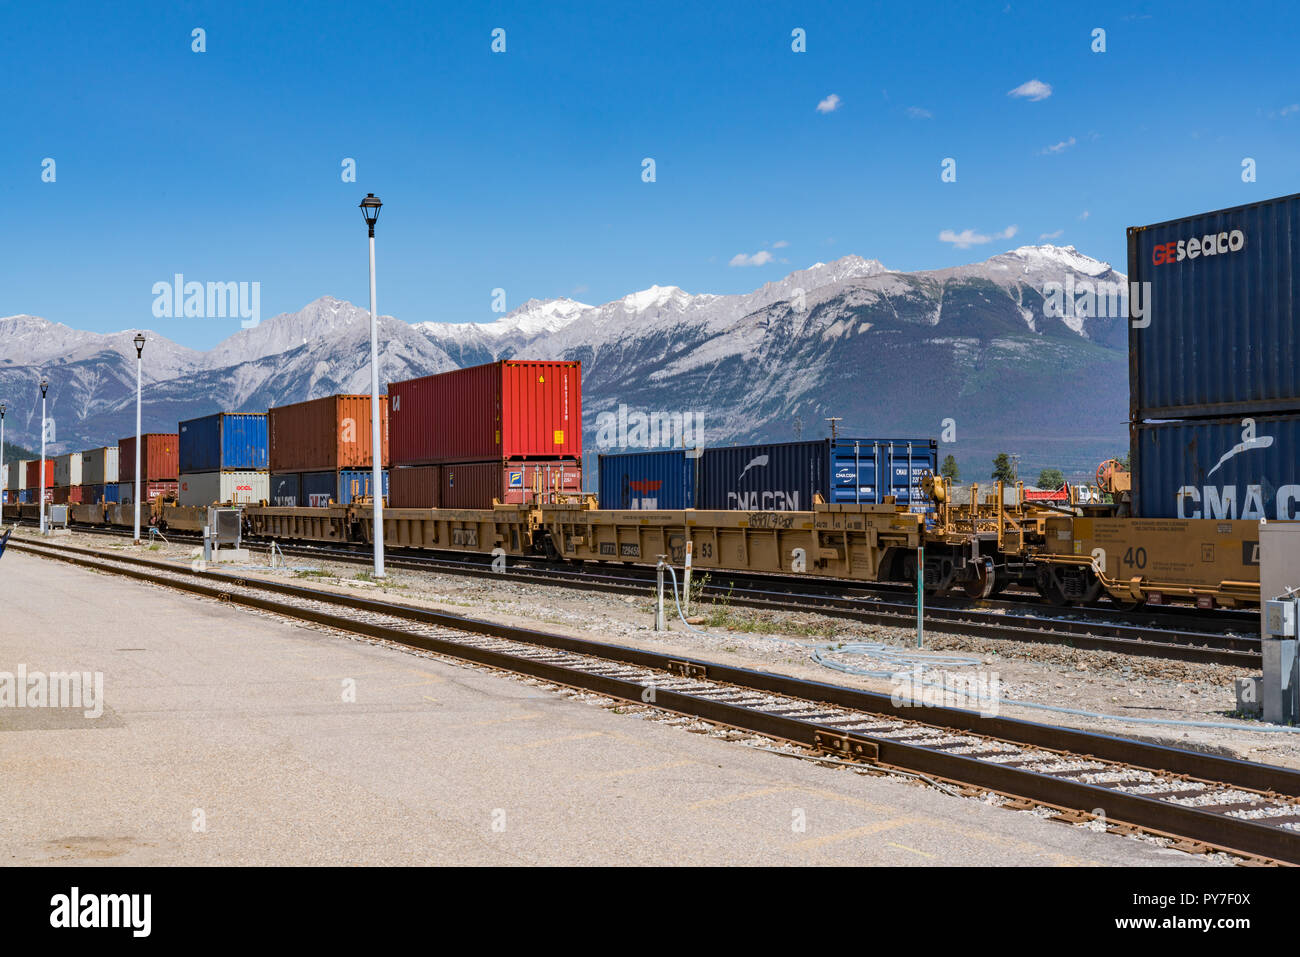 JASPER, CANADA - luglio 5, 2018: ferrovia containers da trasporto attendono la partenza in rampa depot in Jasper, Alberta Foto Stock